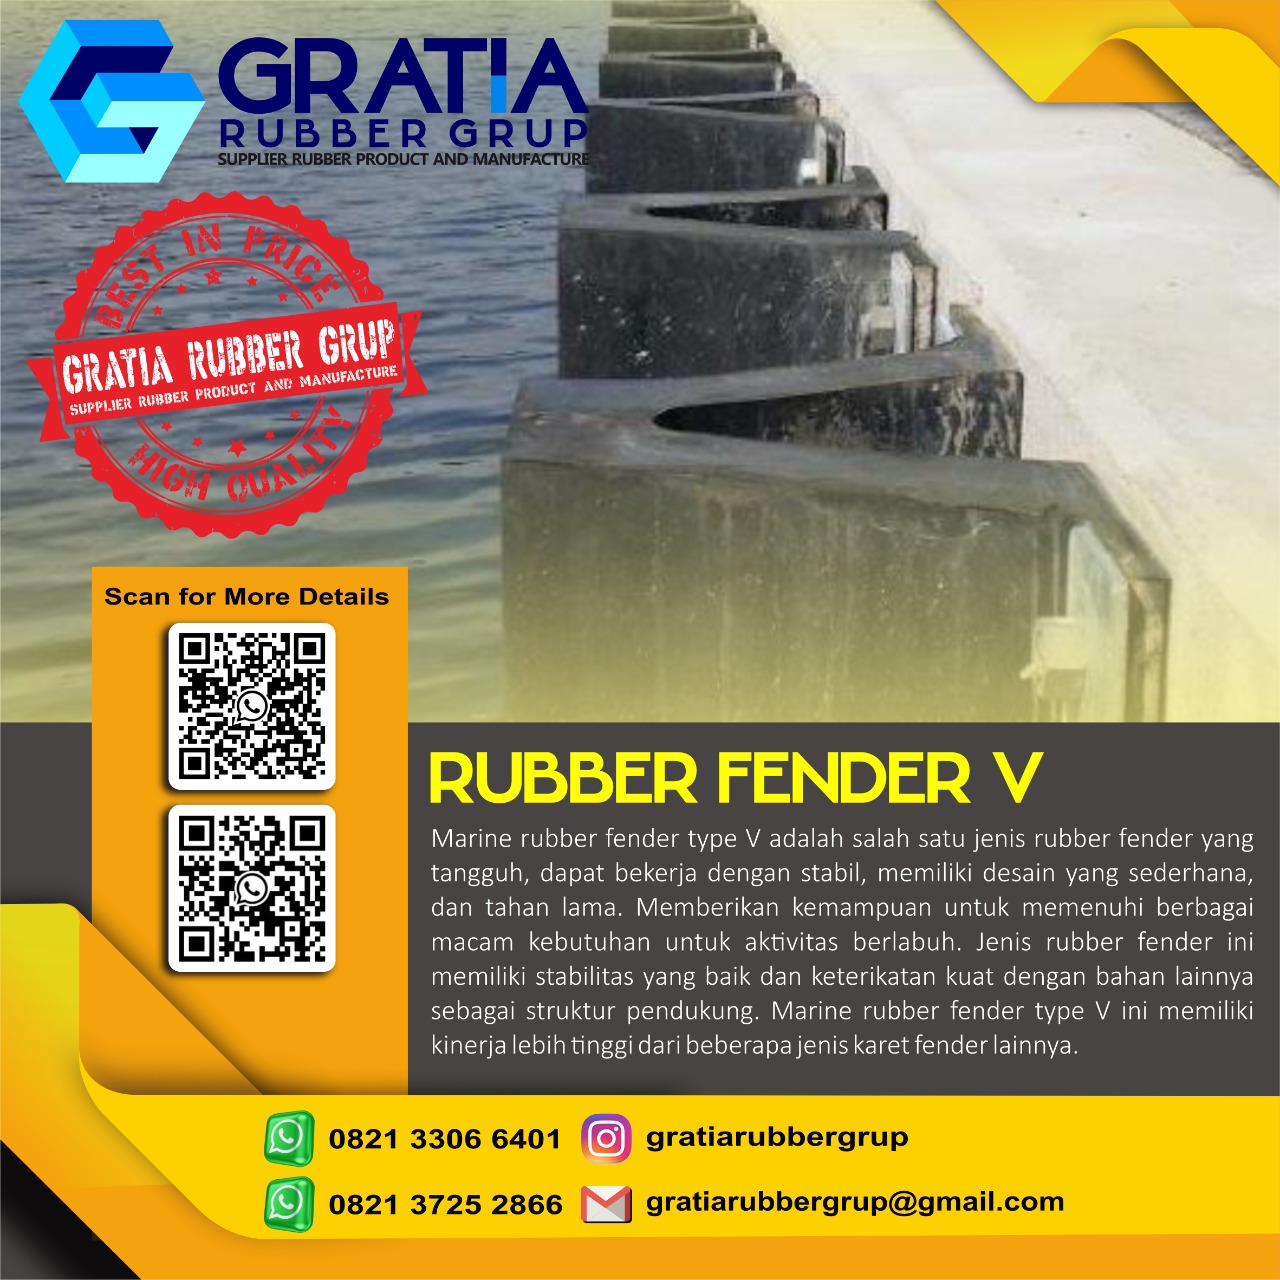 Distributor Rubber Fender Murah Dan Berkualitas  Melayani Pengiriman Ke Palu Sulawesi Hub 0821 3306 0461